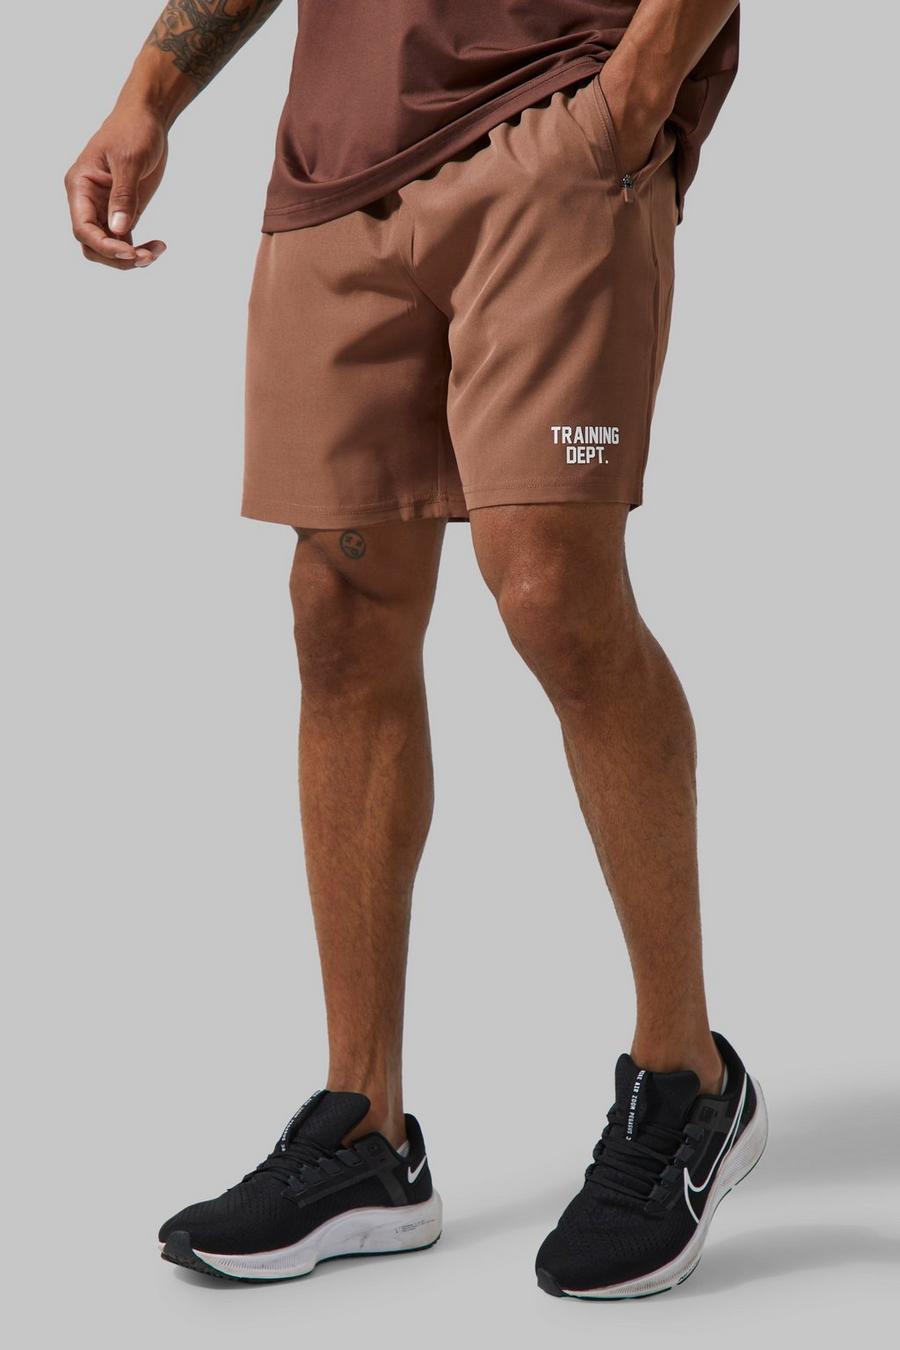 Pantalón corto MAN Active resistente Training Dept, Chocolate marrón